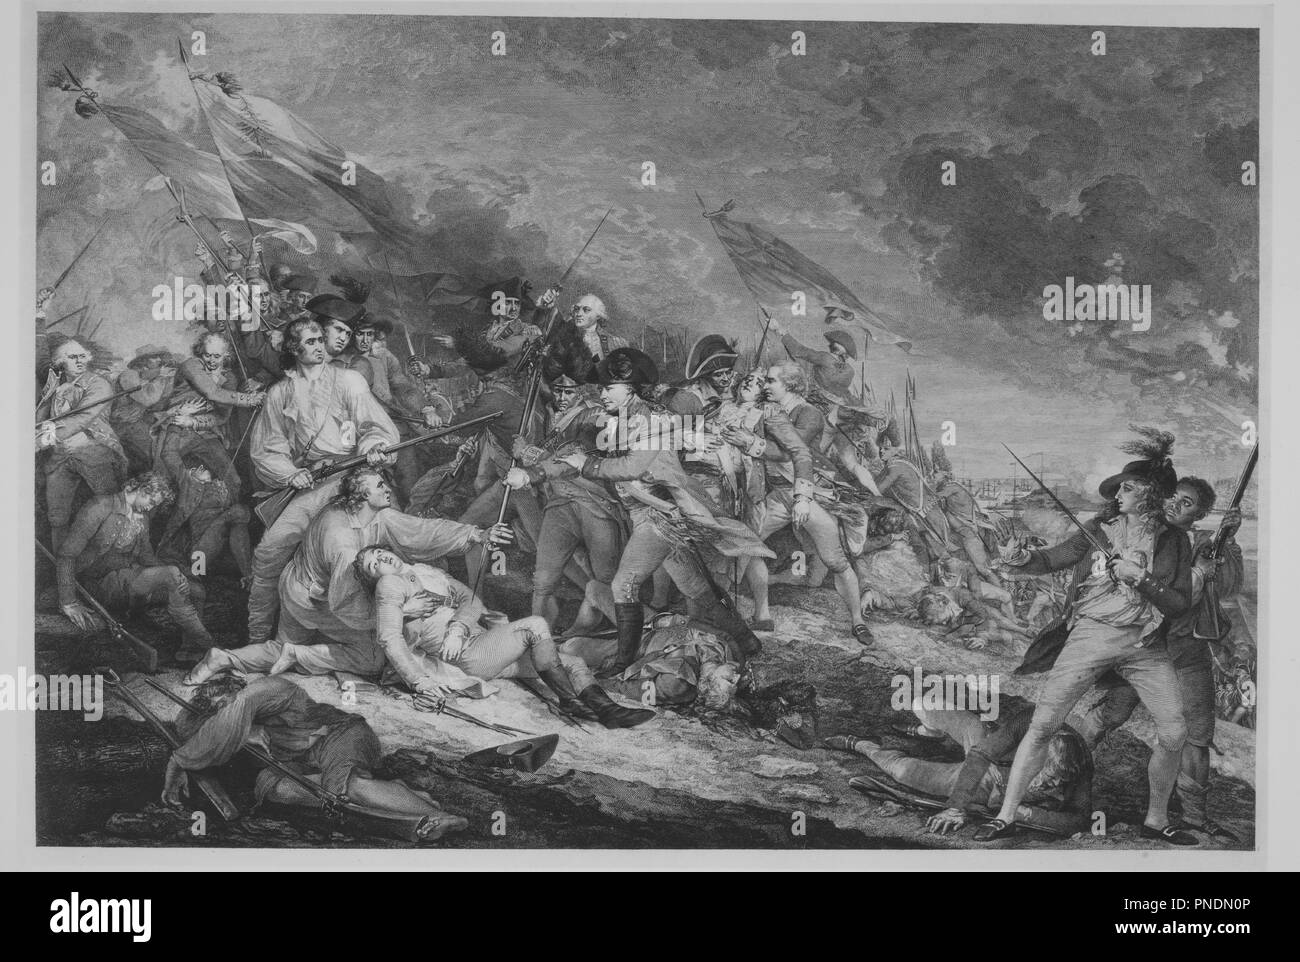 Schlacht von Bunker Hill (17. Juni 1775). Artist: Nach John Trumbull (Amerikanische, Libanon, Connecticut 1756-1843 New York); Johann Gotthard Müller (Deutsch, Bernausen 1747-1830 Stuttgart). Abmessungen: Bild: 19 13/16 x 29 5/8 in. (50,3 x 75,2 cm) Platte: 23 3/8 x 32 5/8 in. (59,4 x 82,9 cm) Blatt: 23 3/8 x 34 in. (59,4 x 86,4 cm). Herausgeber: Veröffentlicht in London von Antonio Cesare Poggi (Italienisch, aktive von London und Paris, 1769 - 1836?). Datum: Ca. 1798. Museum: Metropolitan Museum of Art, New York, USA. Stockfoto